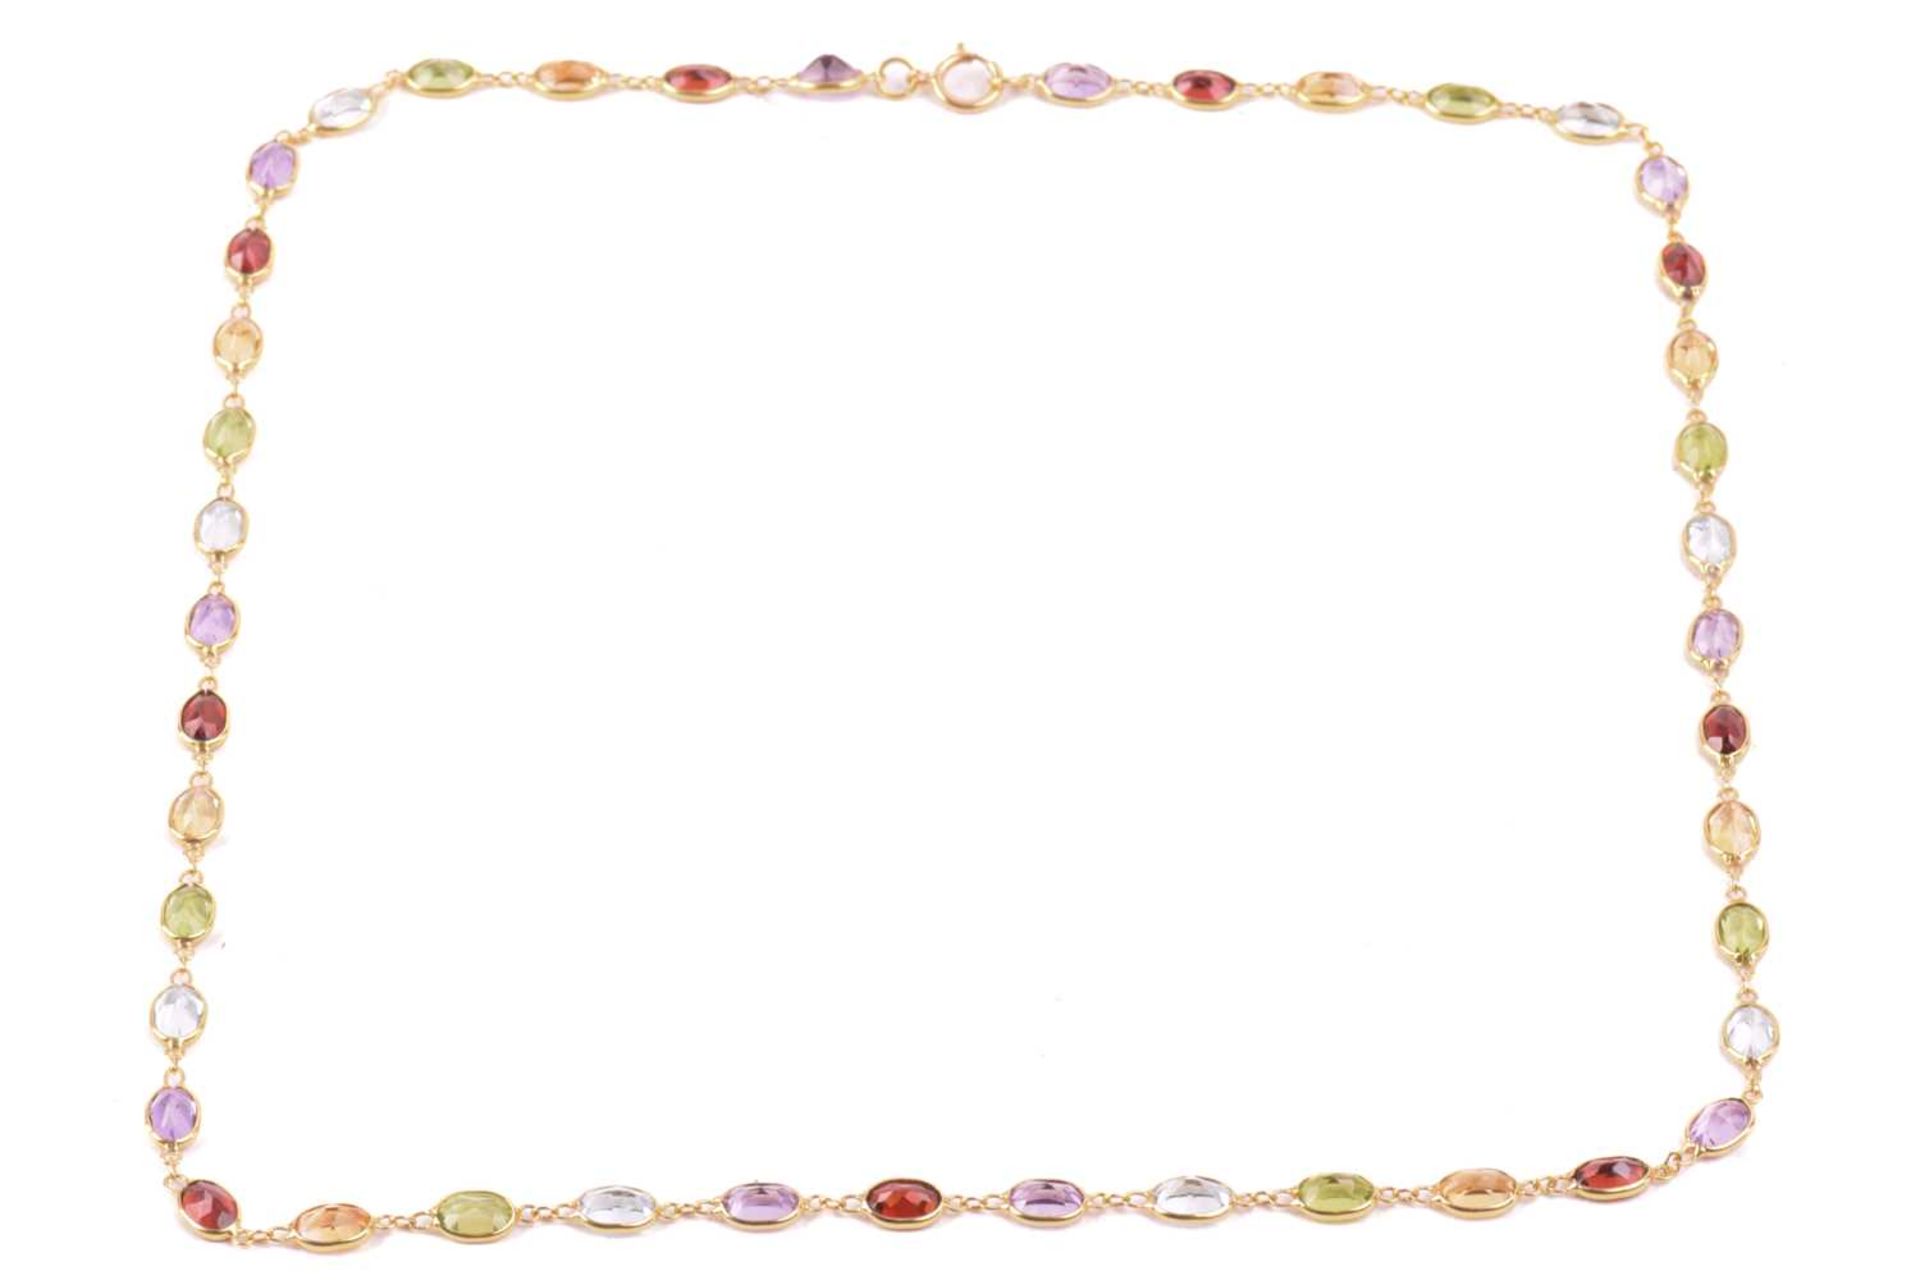 A gem-set harlequin necklace, open-back links set with oval-cut gemstones of 5.8 mm, alternating